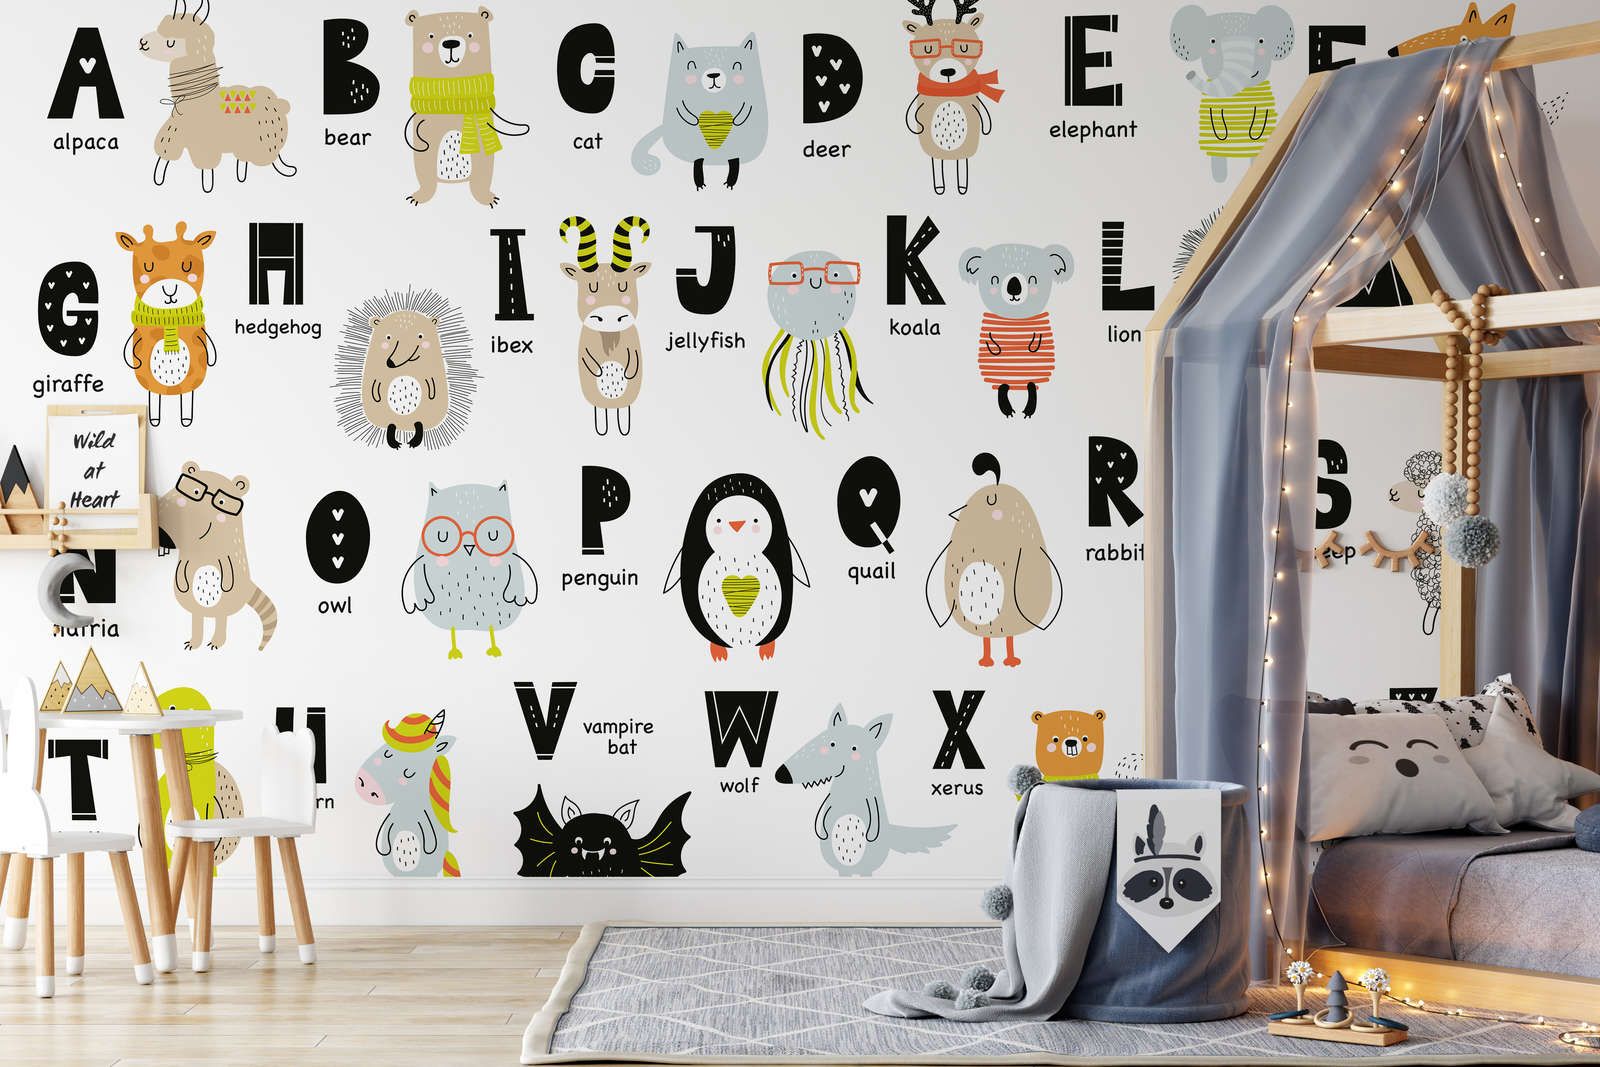             papiers peints à impression numérique Alphabet avec animaux et noms d'animaux - intissé lisse & nacré
        